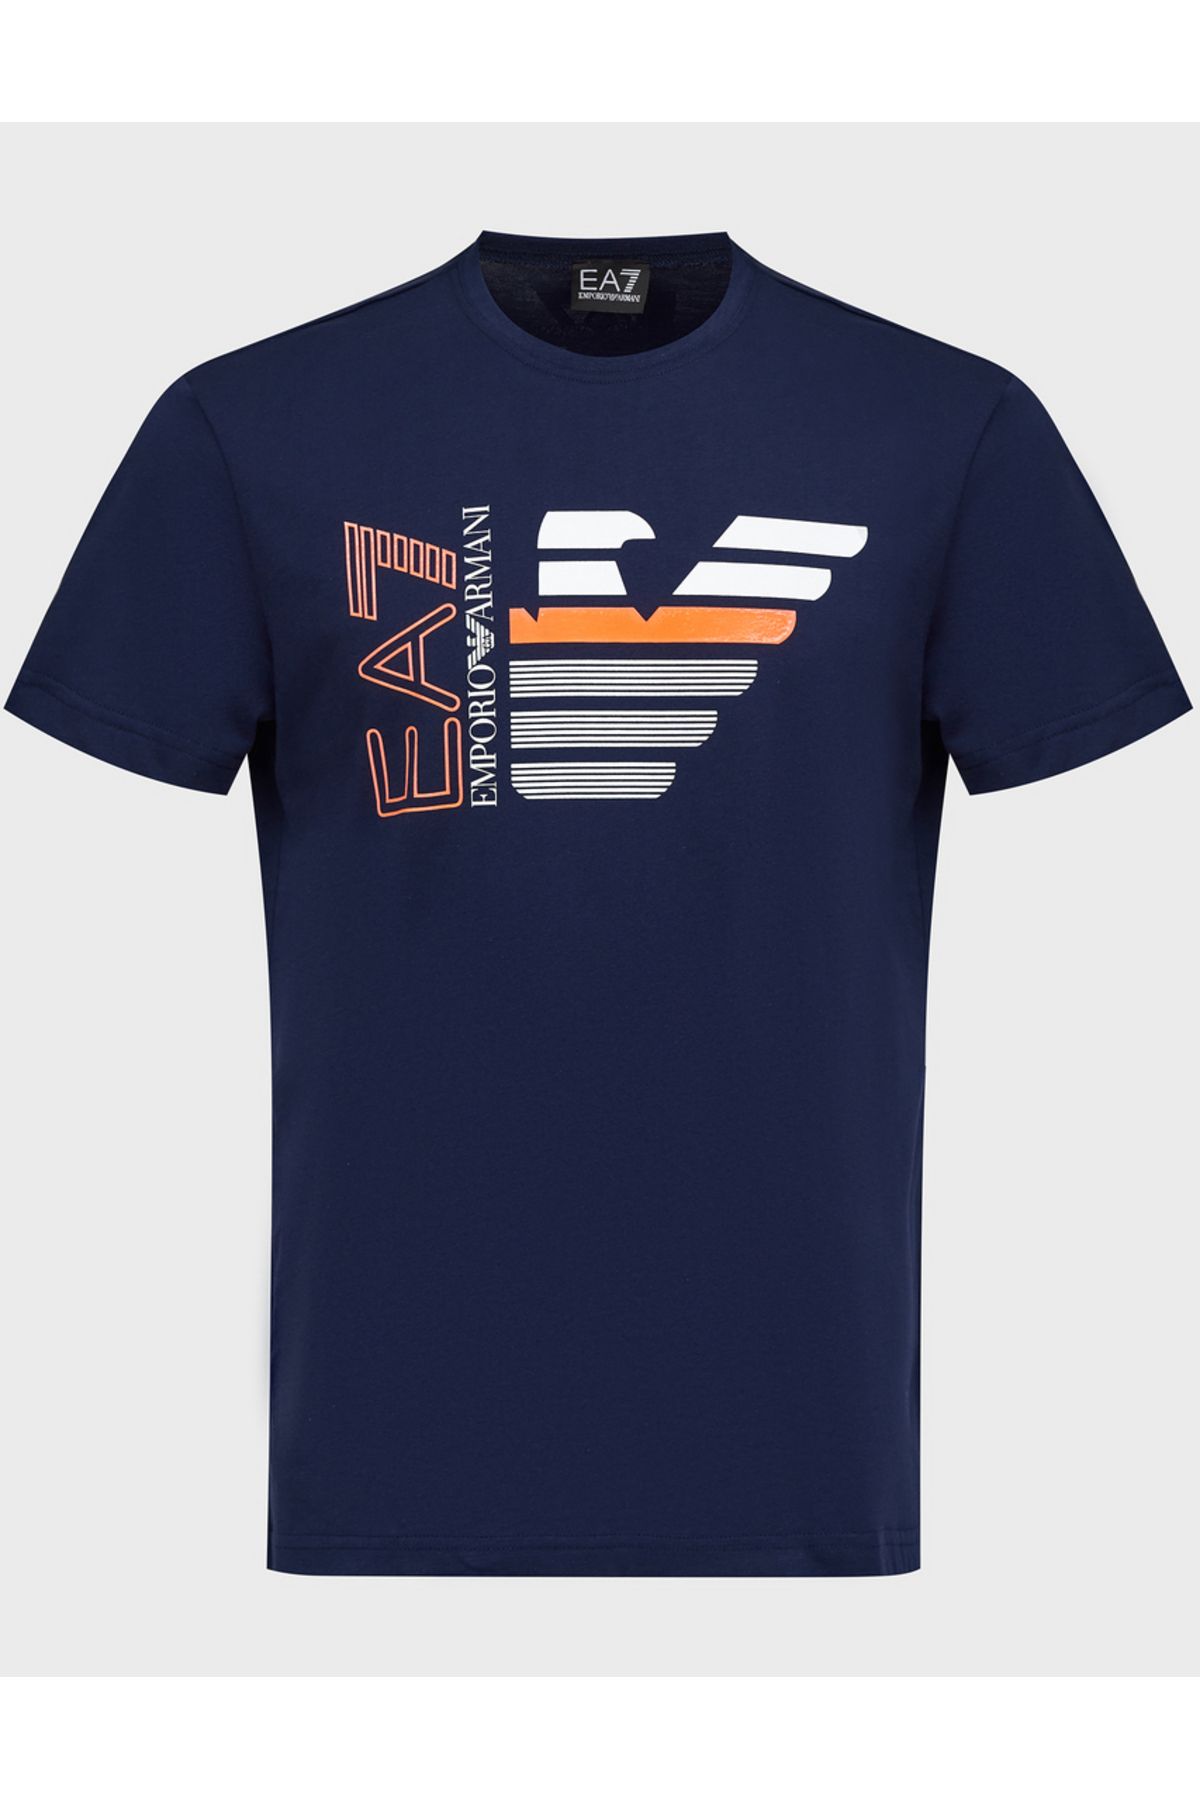 EA7 Eagle and Logo T-shirt